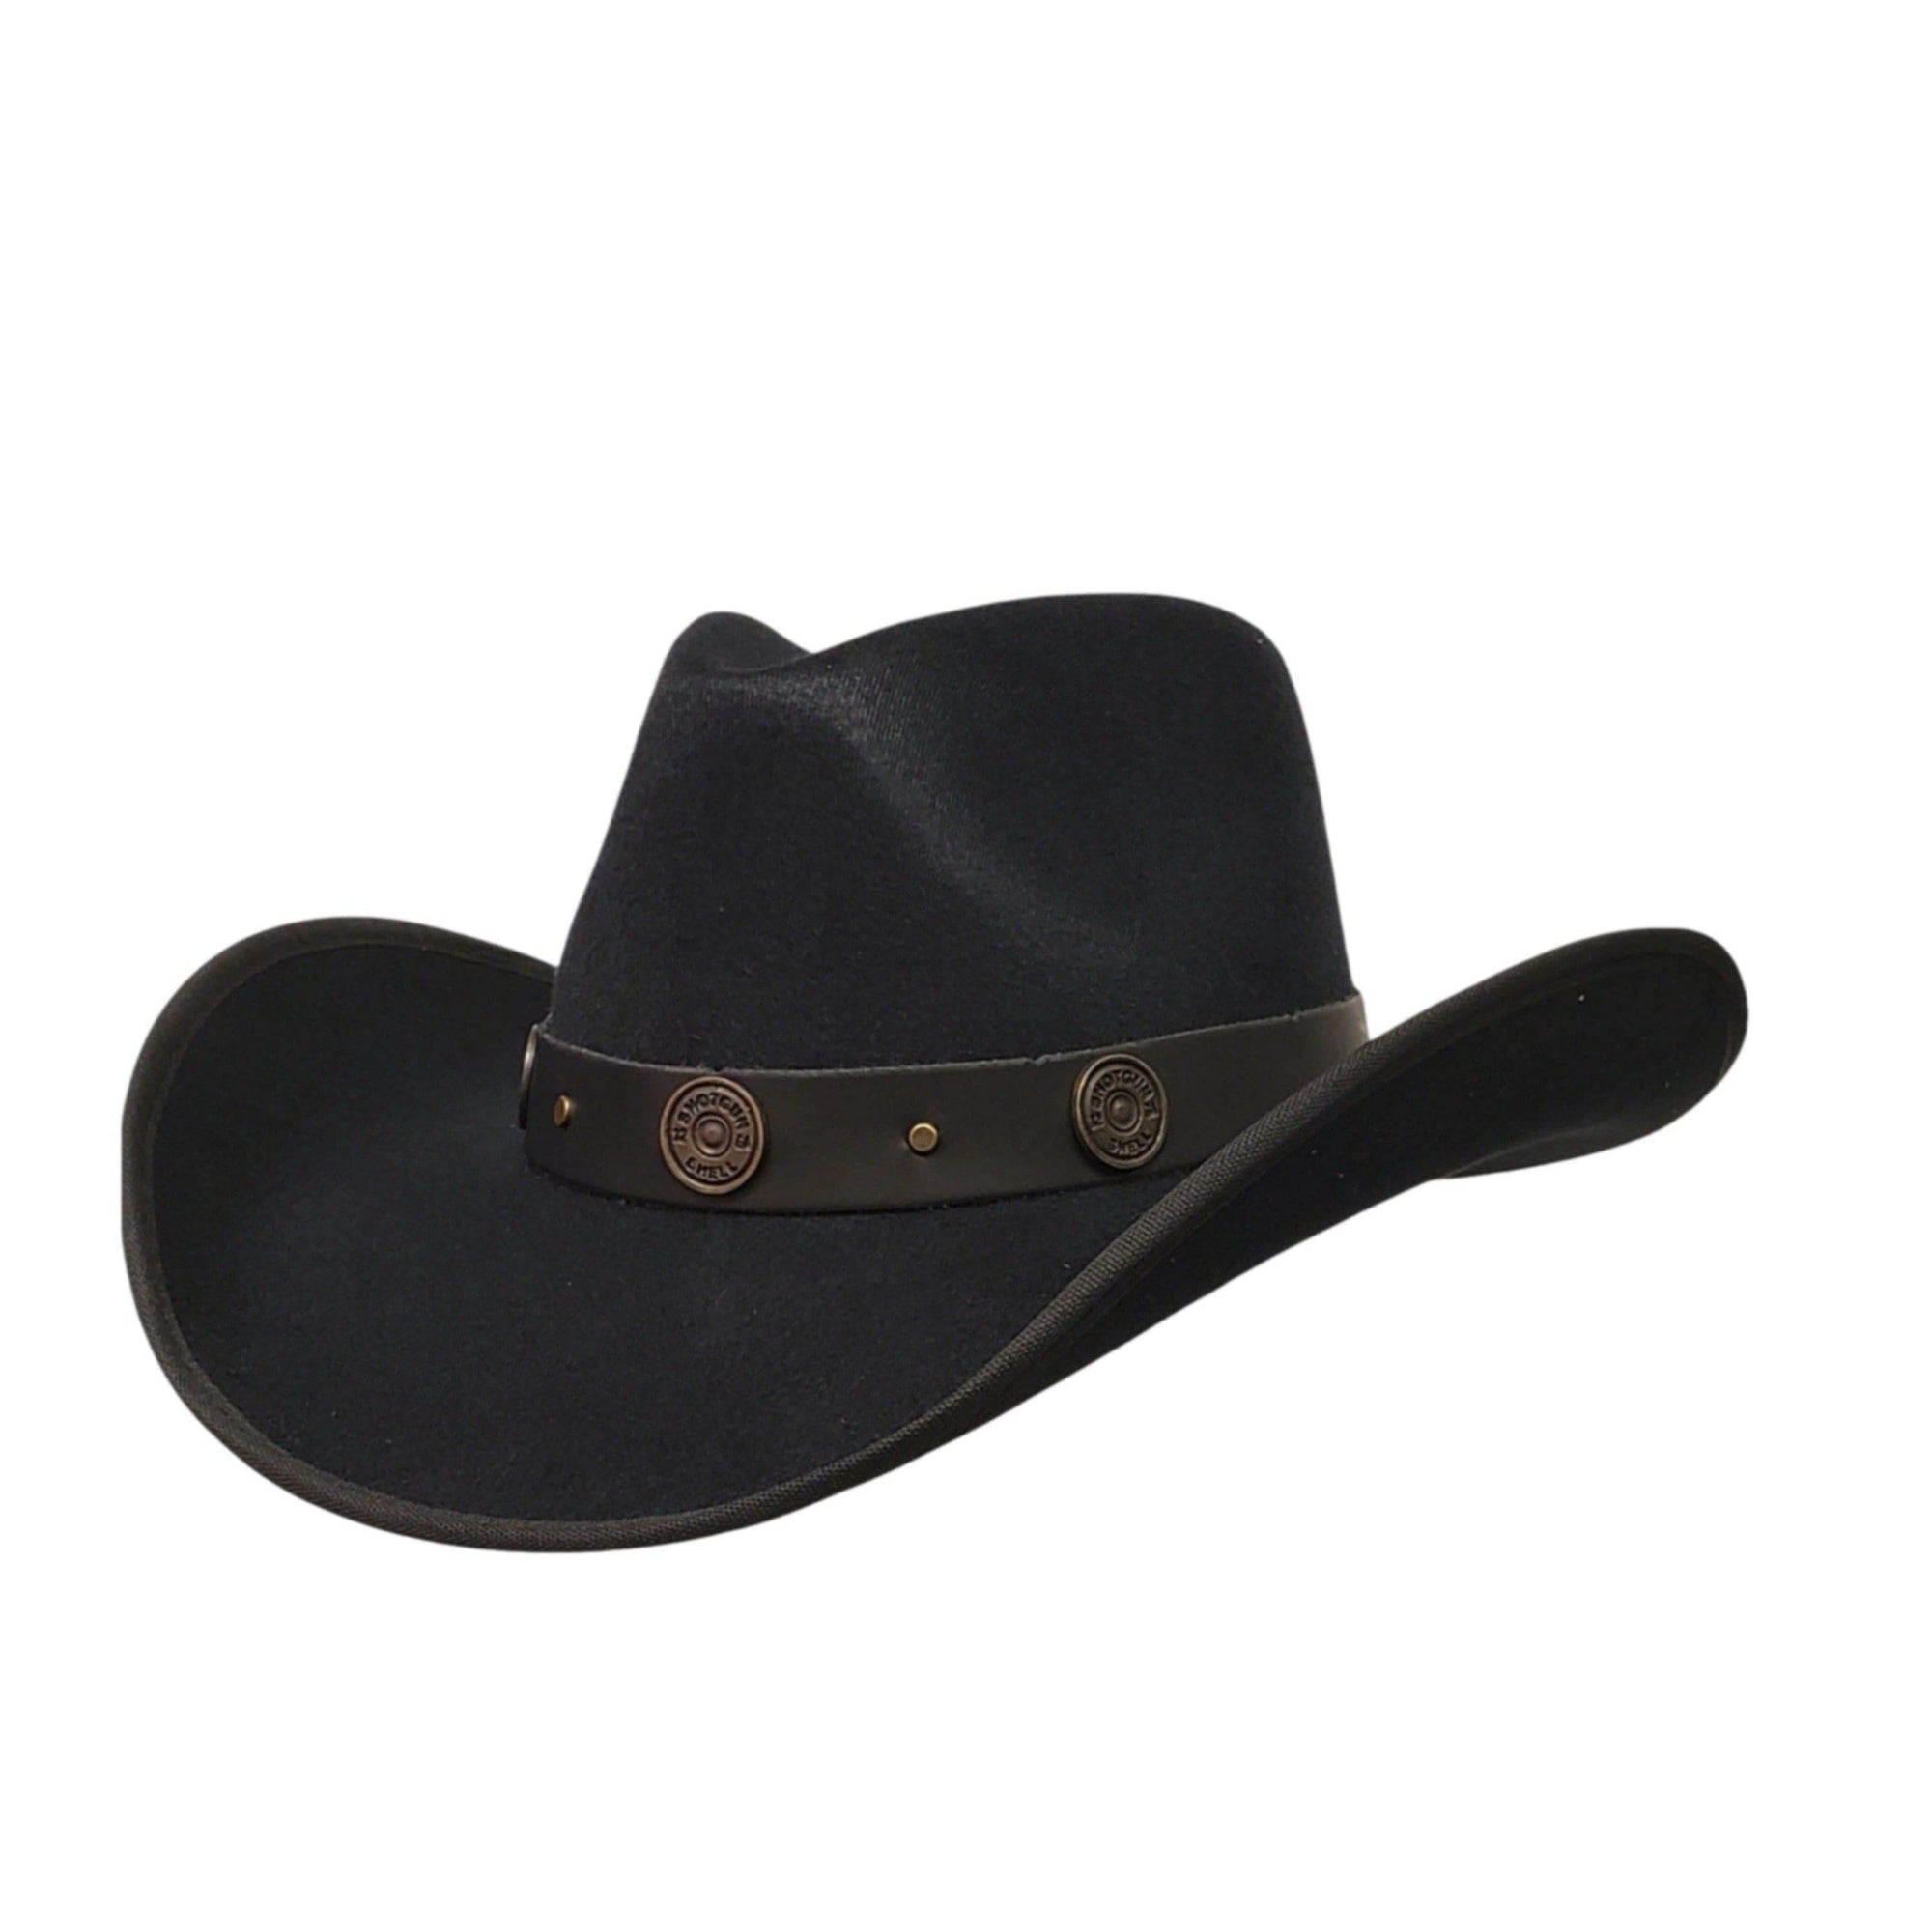 Gone Country Hats Men & Women's Hats Double Barrel